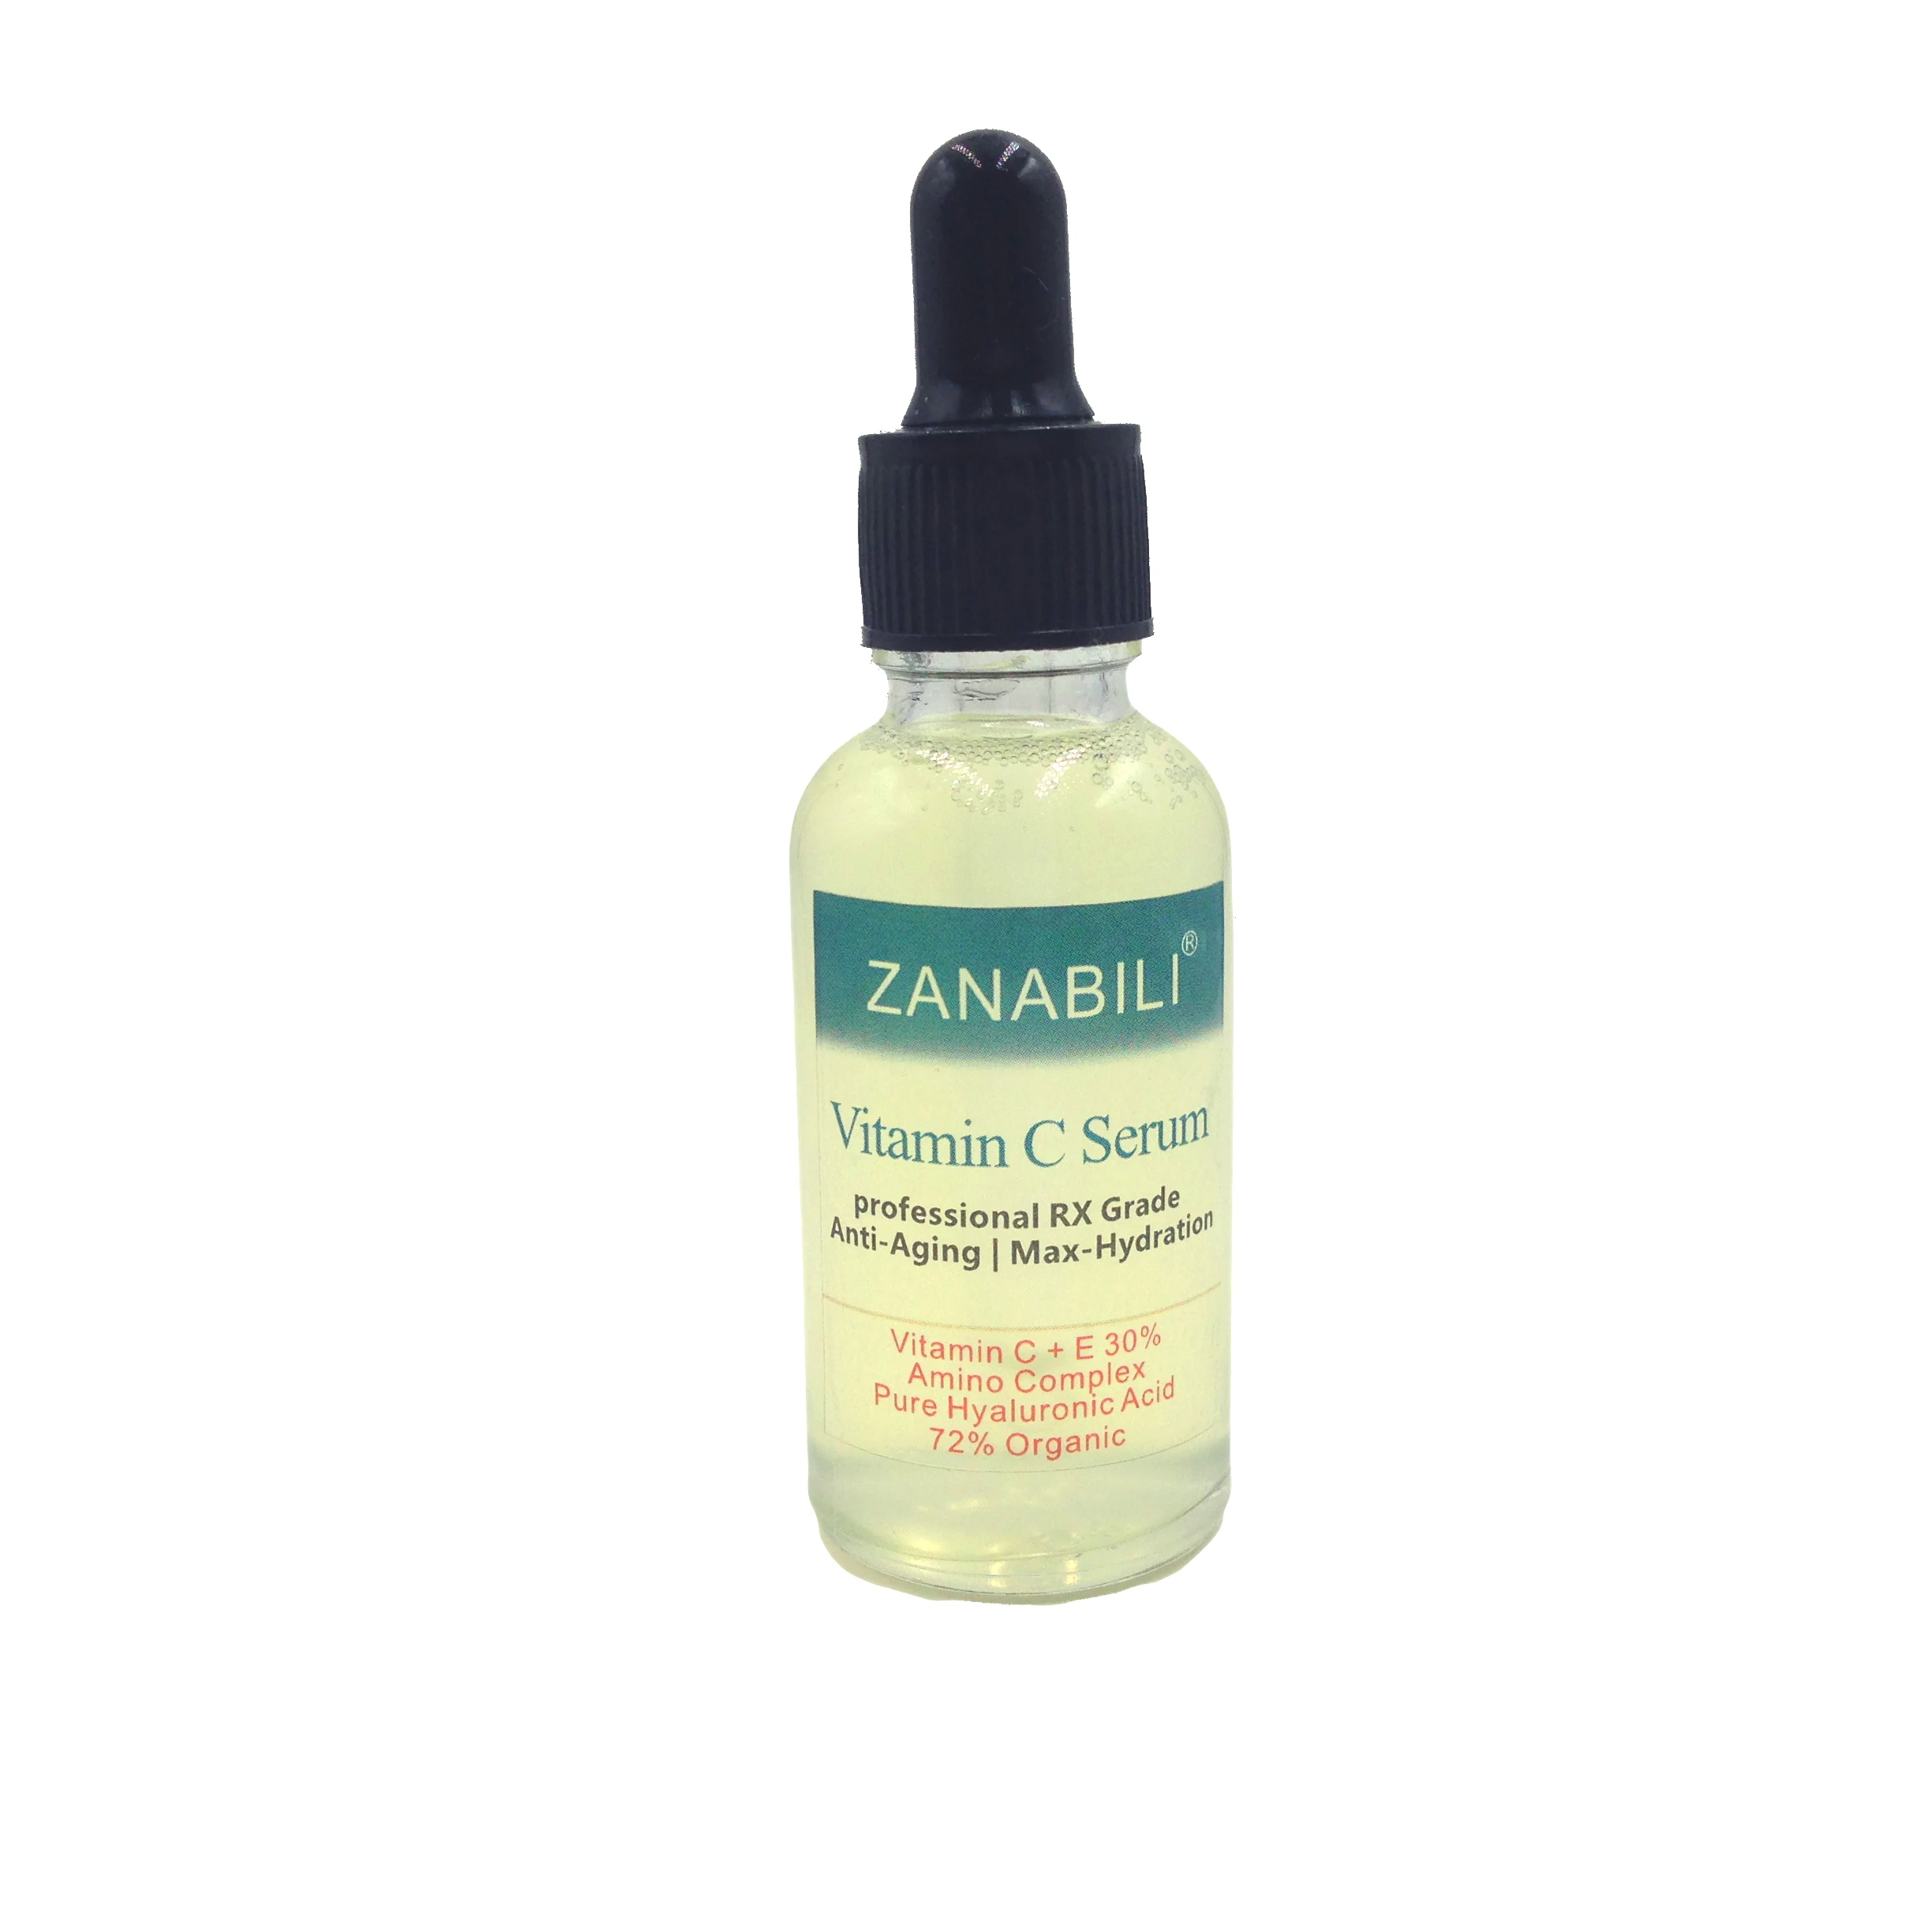 ZANABILI 30% Витамин С + E 100% Гиалуроновая кислота ретинол лица Сыворотки уход за кожей антивозрастной увлажняющий нестареющий Красота крем для